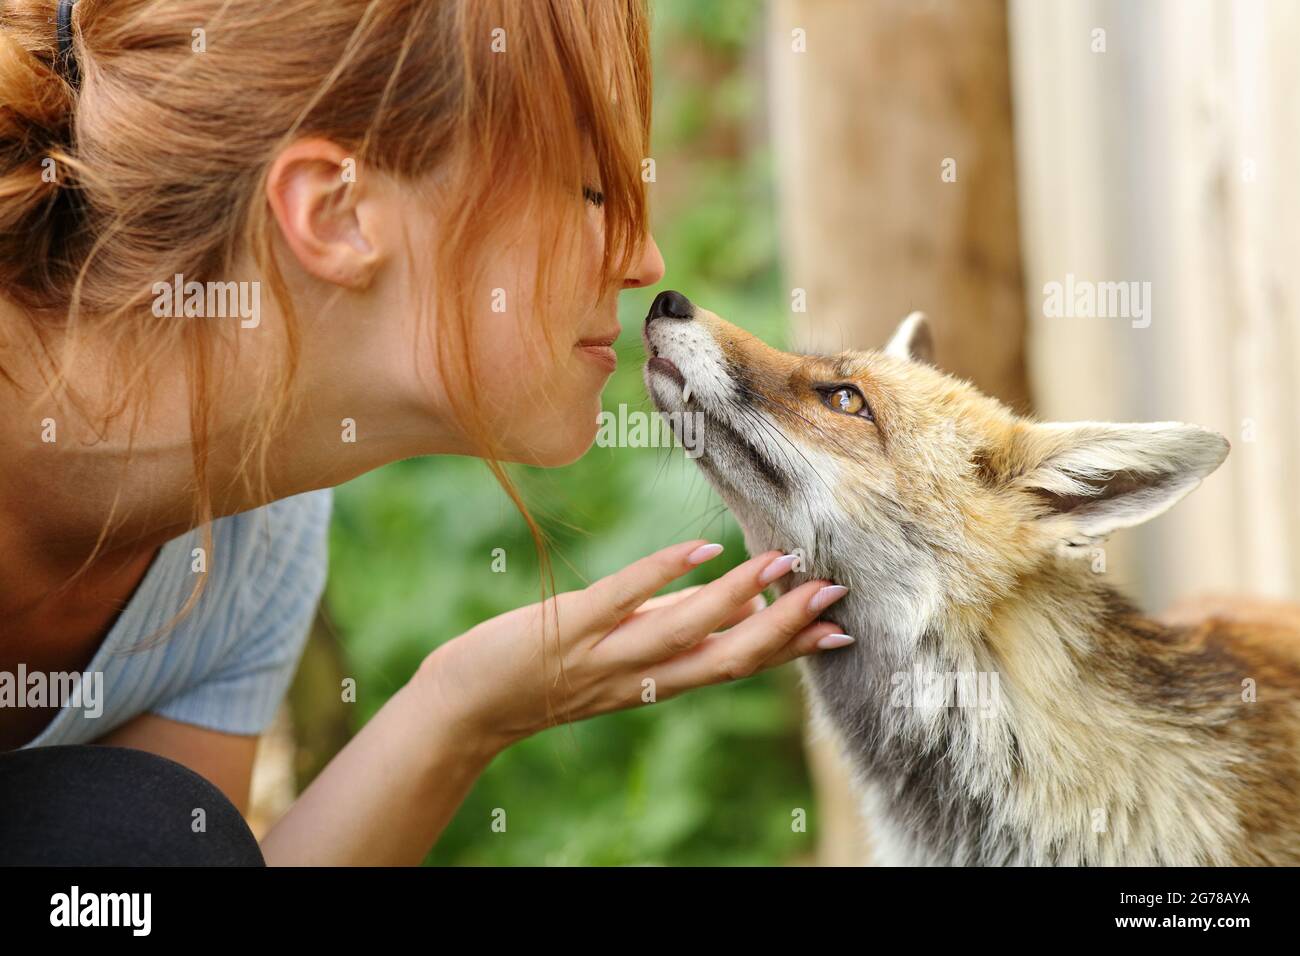 Bonne femme aimant des animaux embrassant un renard dans une ferme Banque D'Images